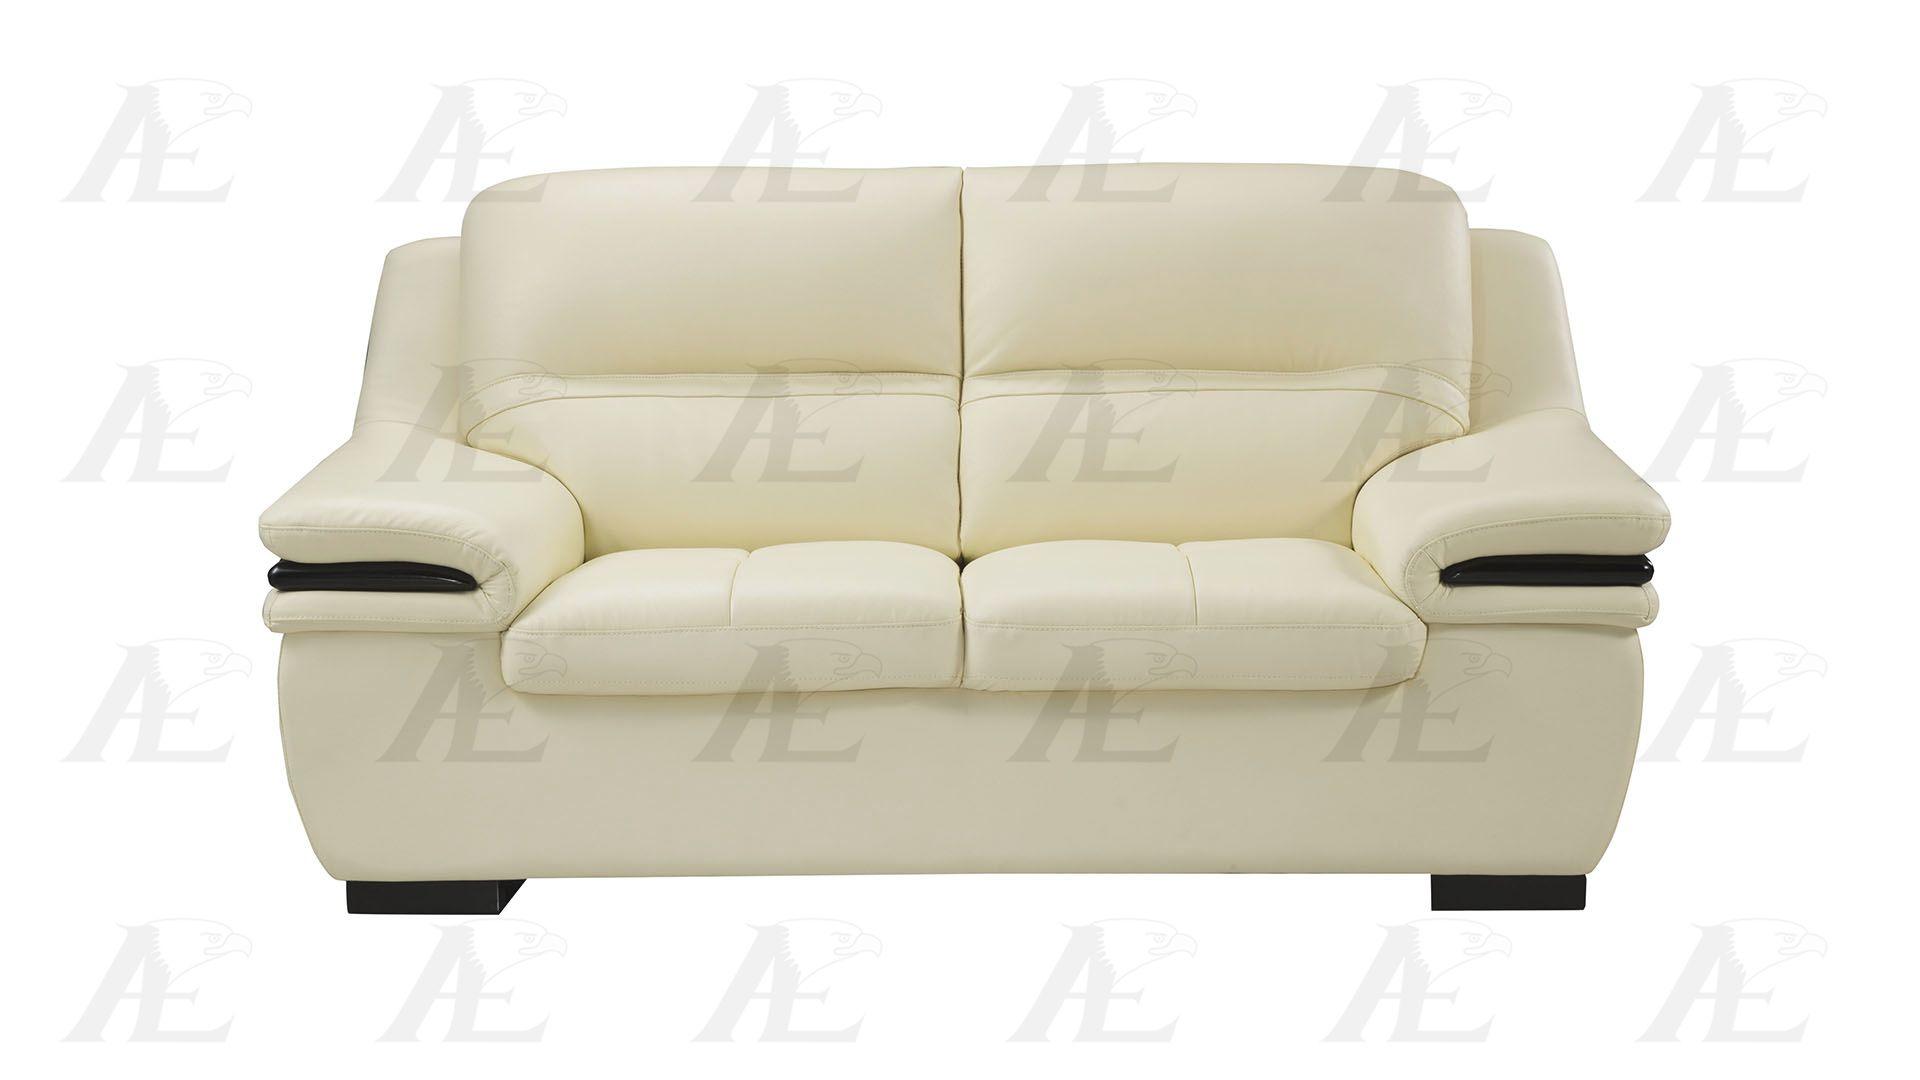 

                    
American Eagle Furniture EK-B113-IV Sofa Set Ivory Genuine Leather Purchase 
